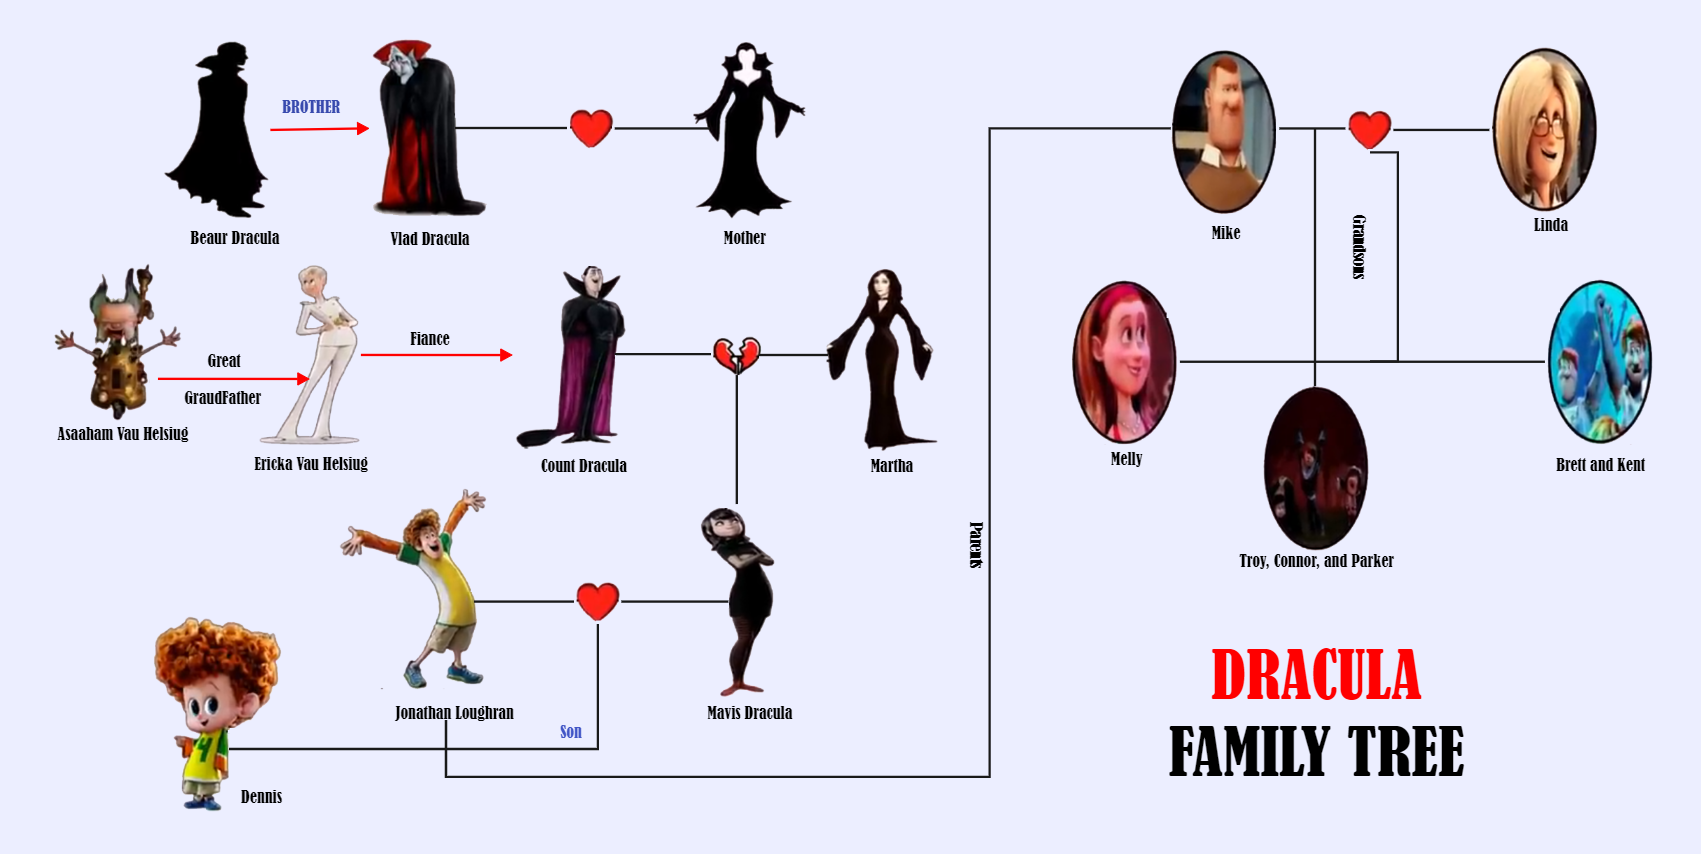 Hotel Transylvania Dracula Family Tree